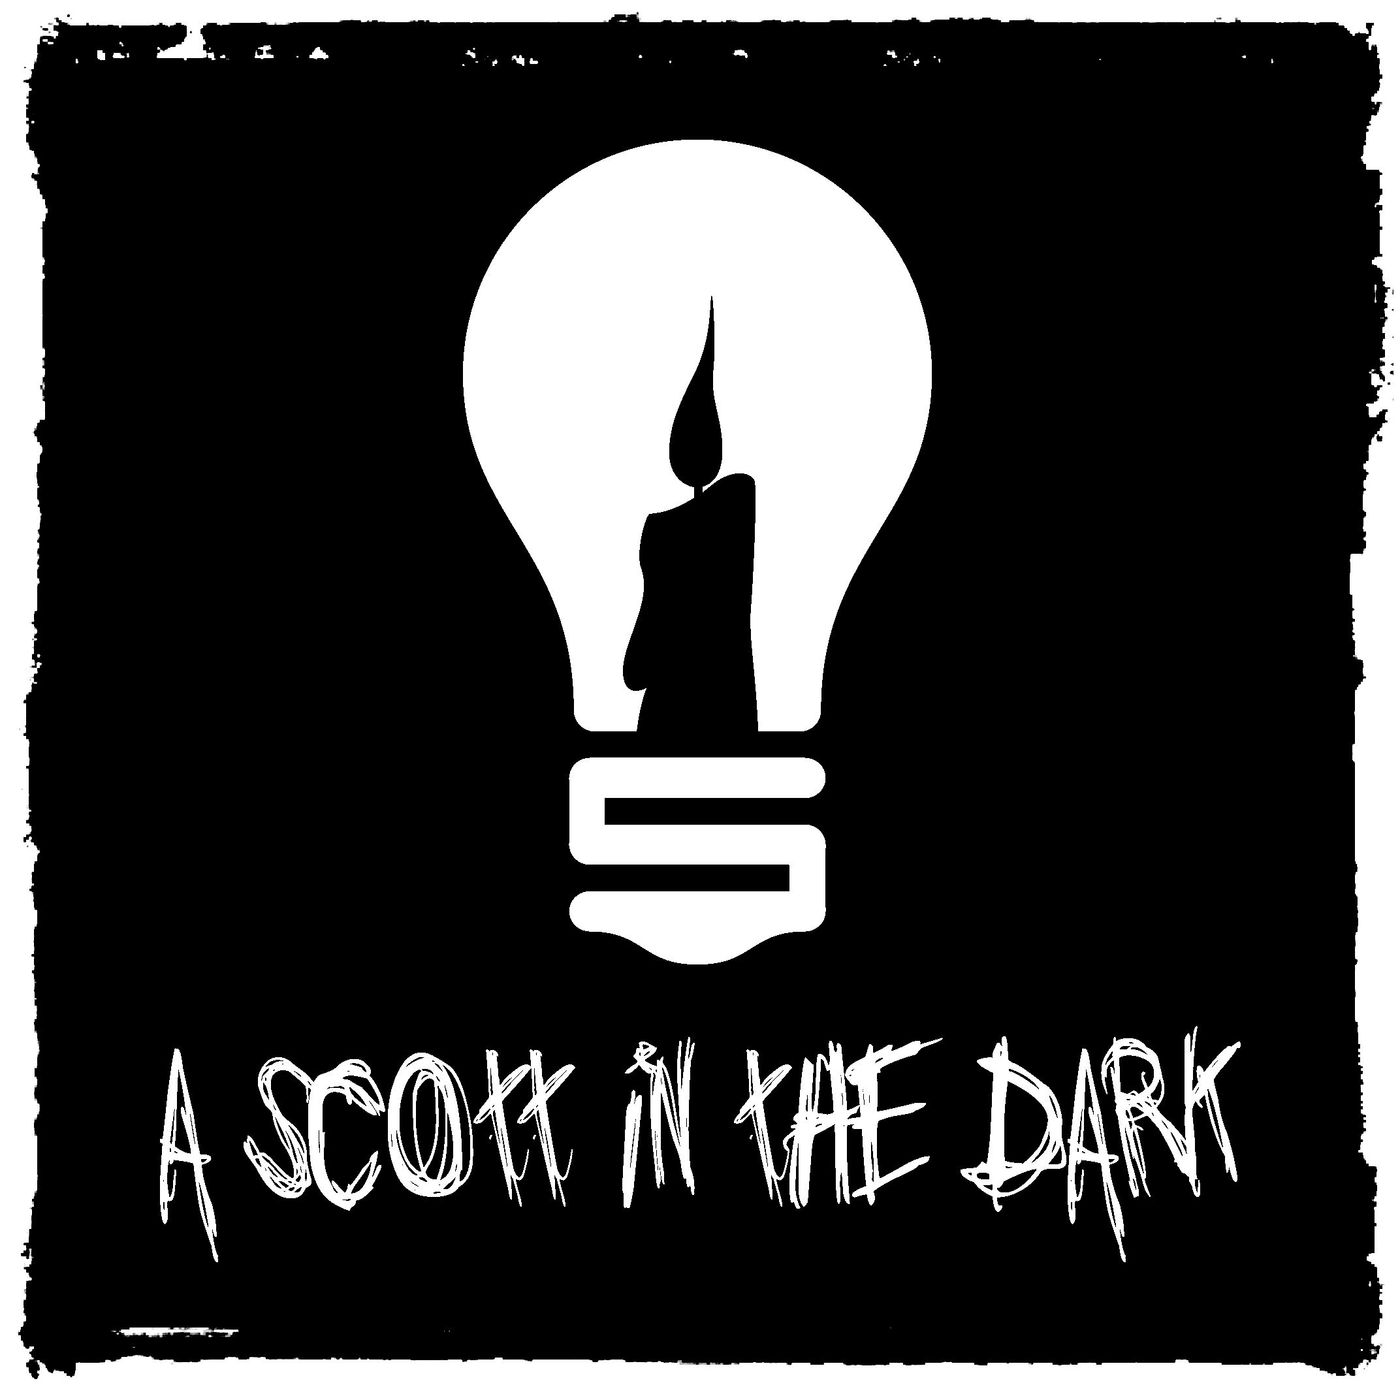 [A Scott in the Dark] Episode 5 - You Suck